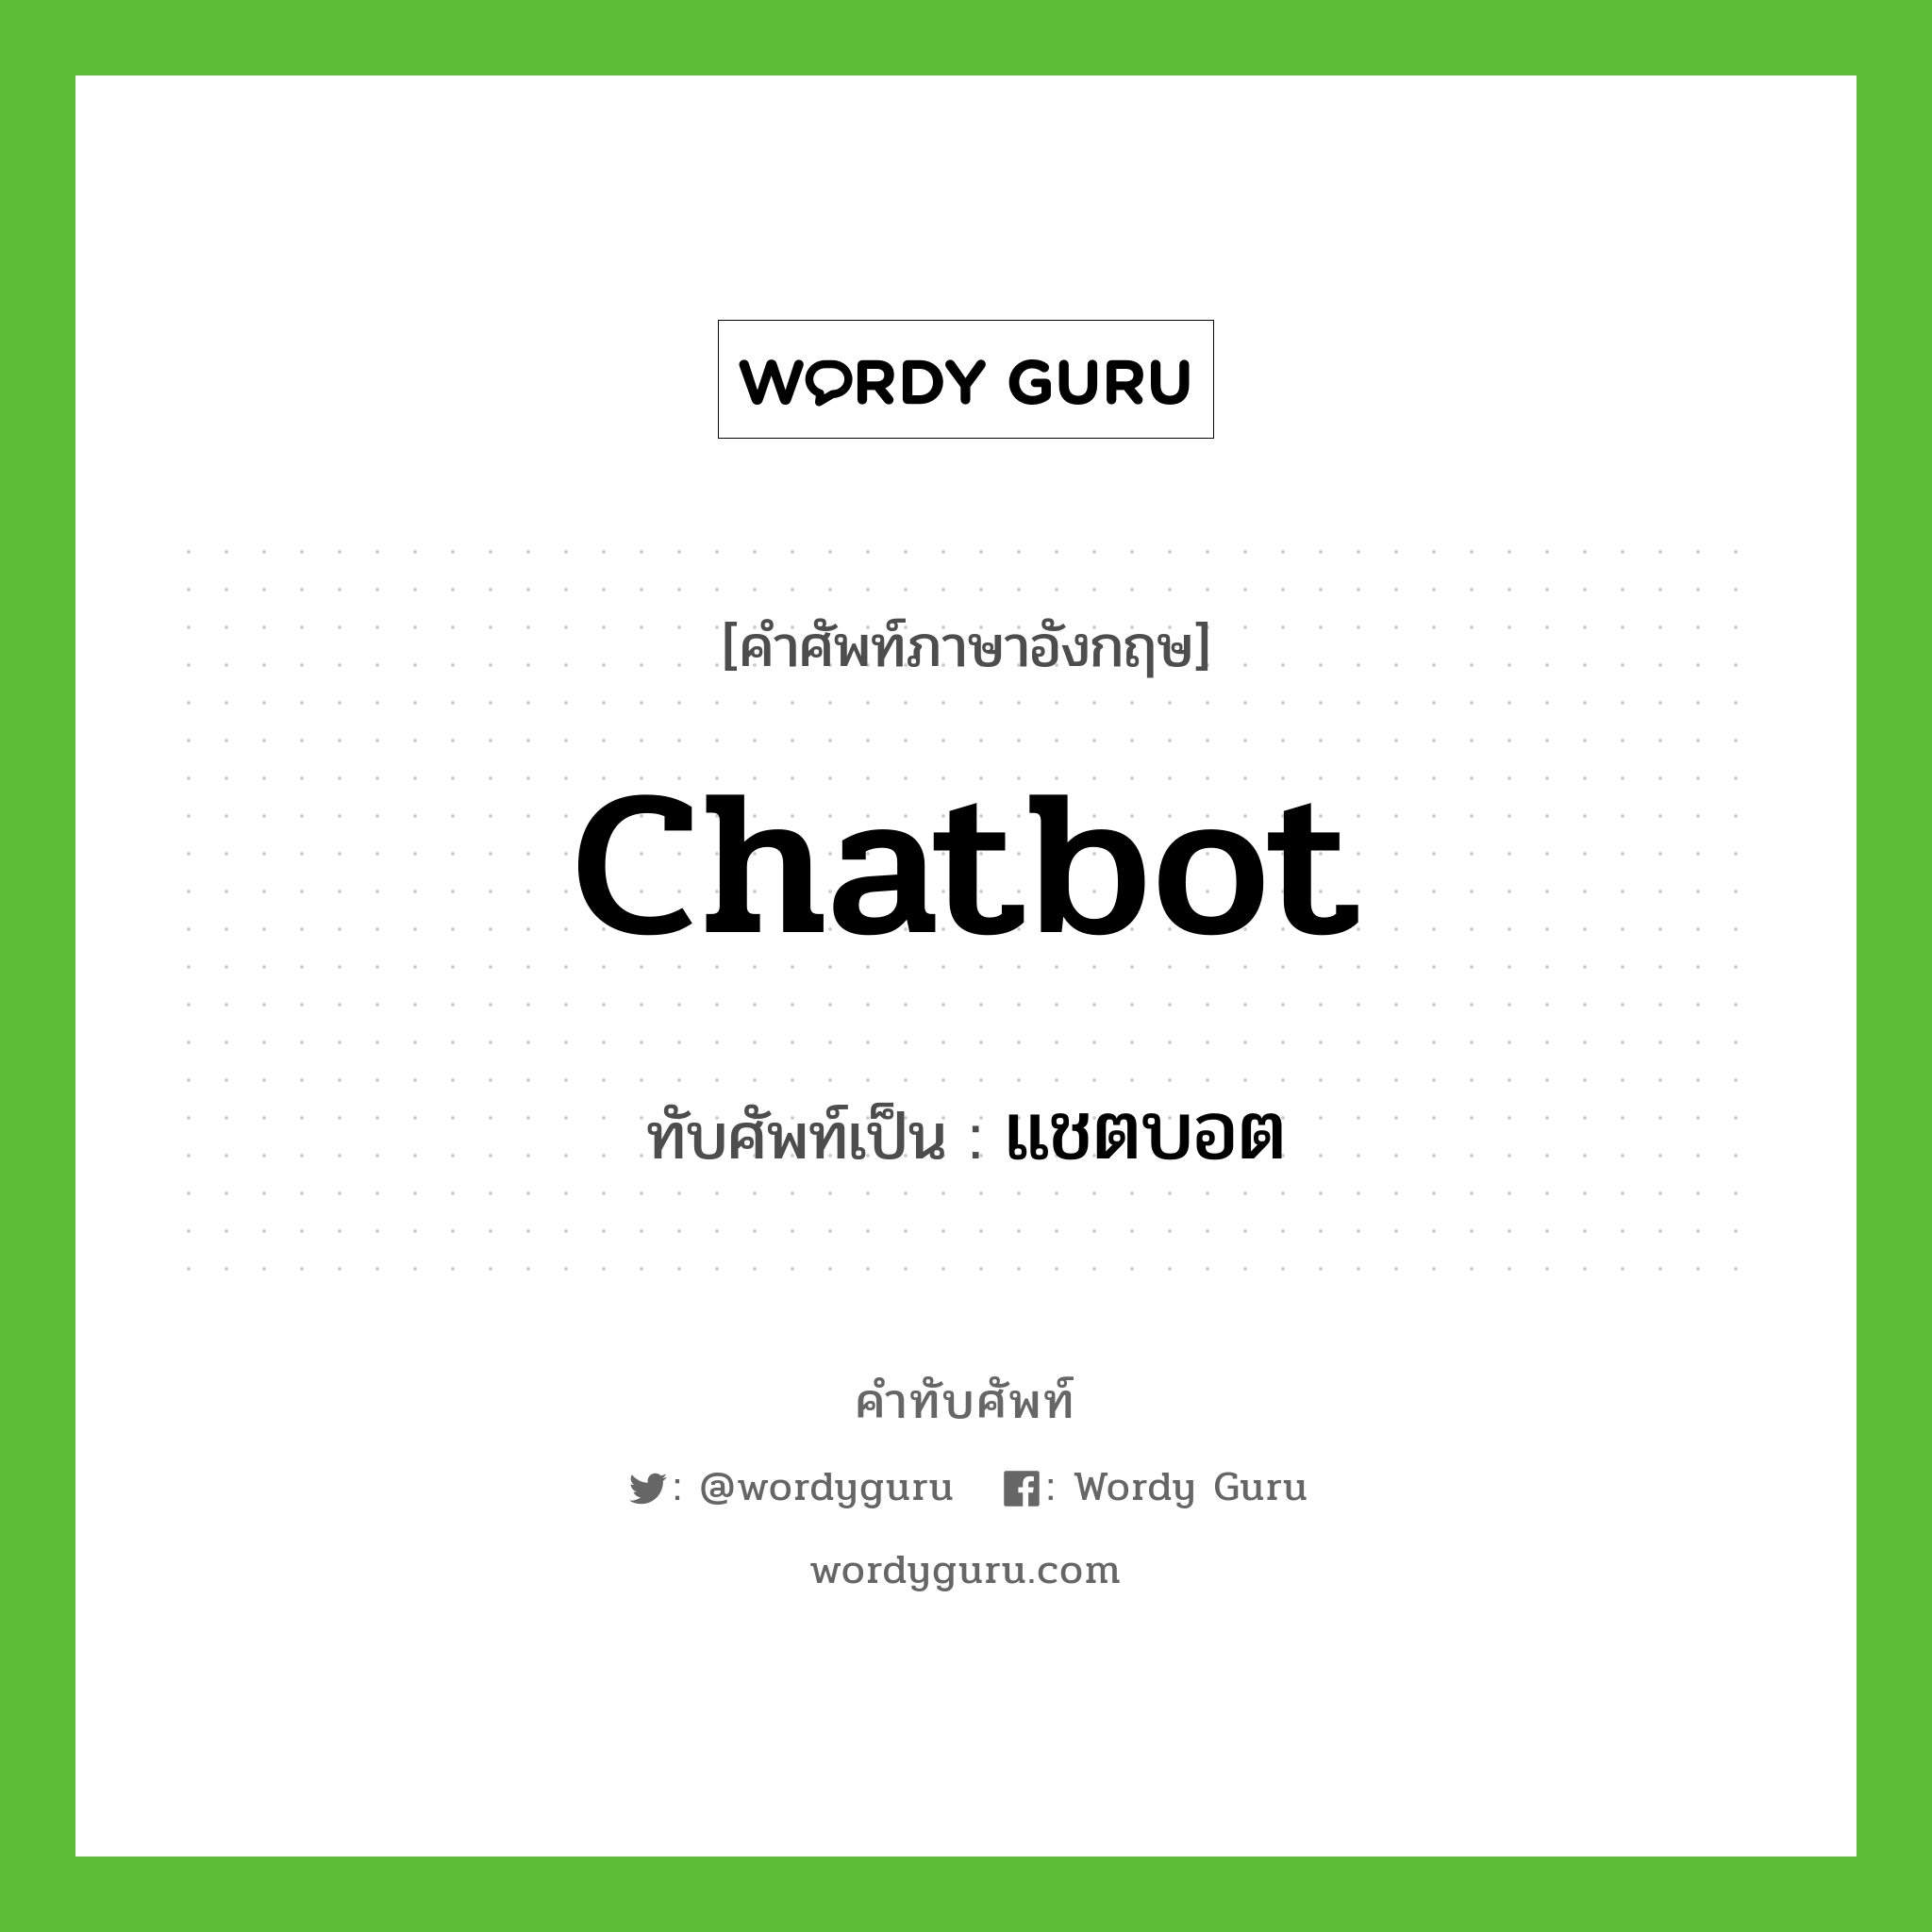 แชตบอต เขียนอย่างไร?, คำศัพท์ภาษาอังกฤษ แชตบอต ทับศัพท์เป็น chatbot